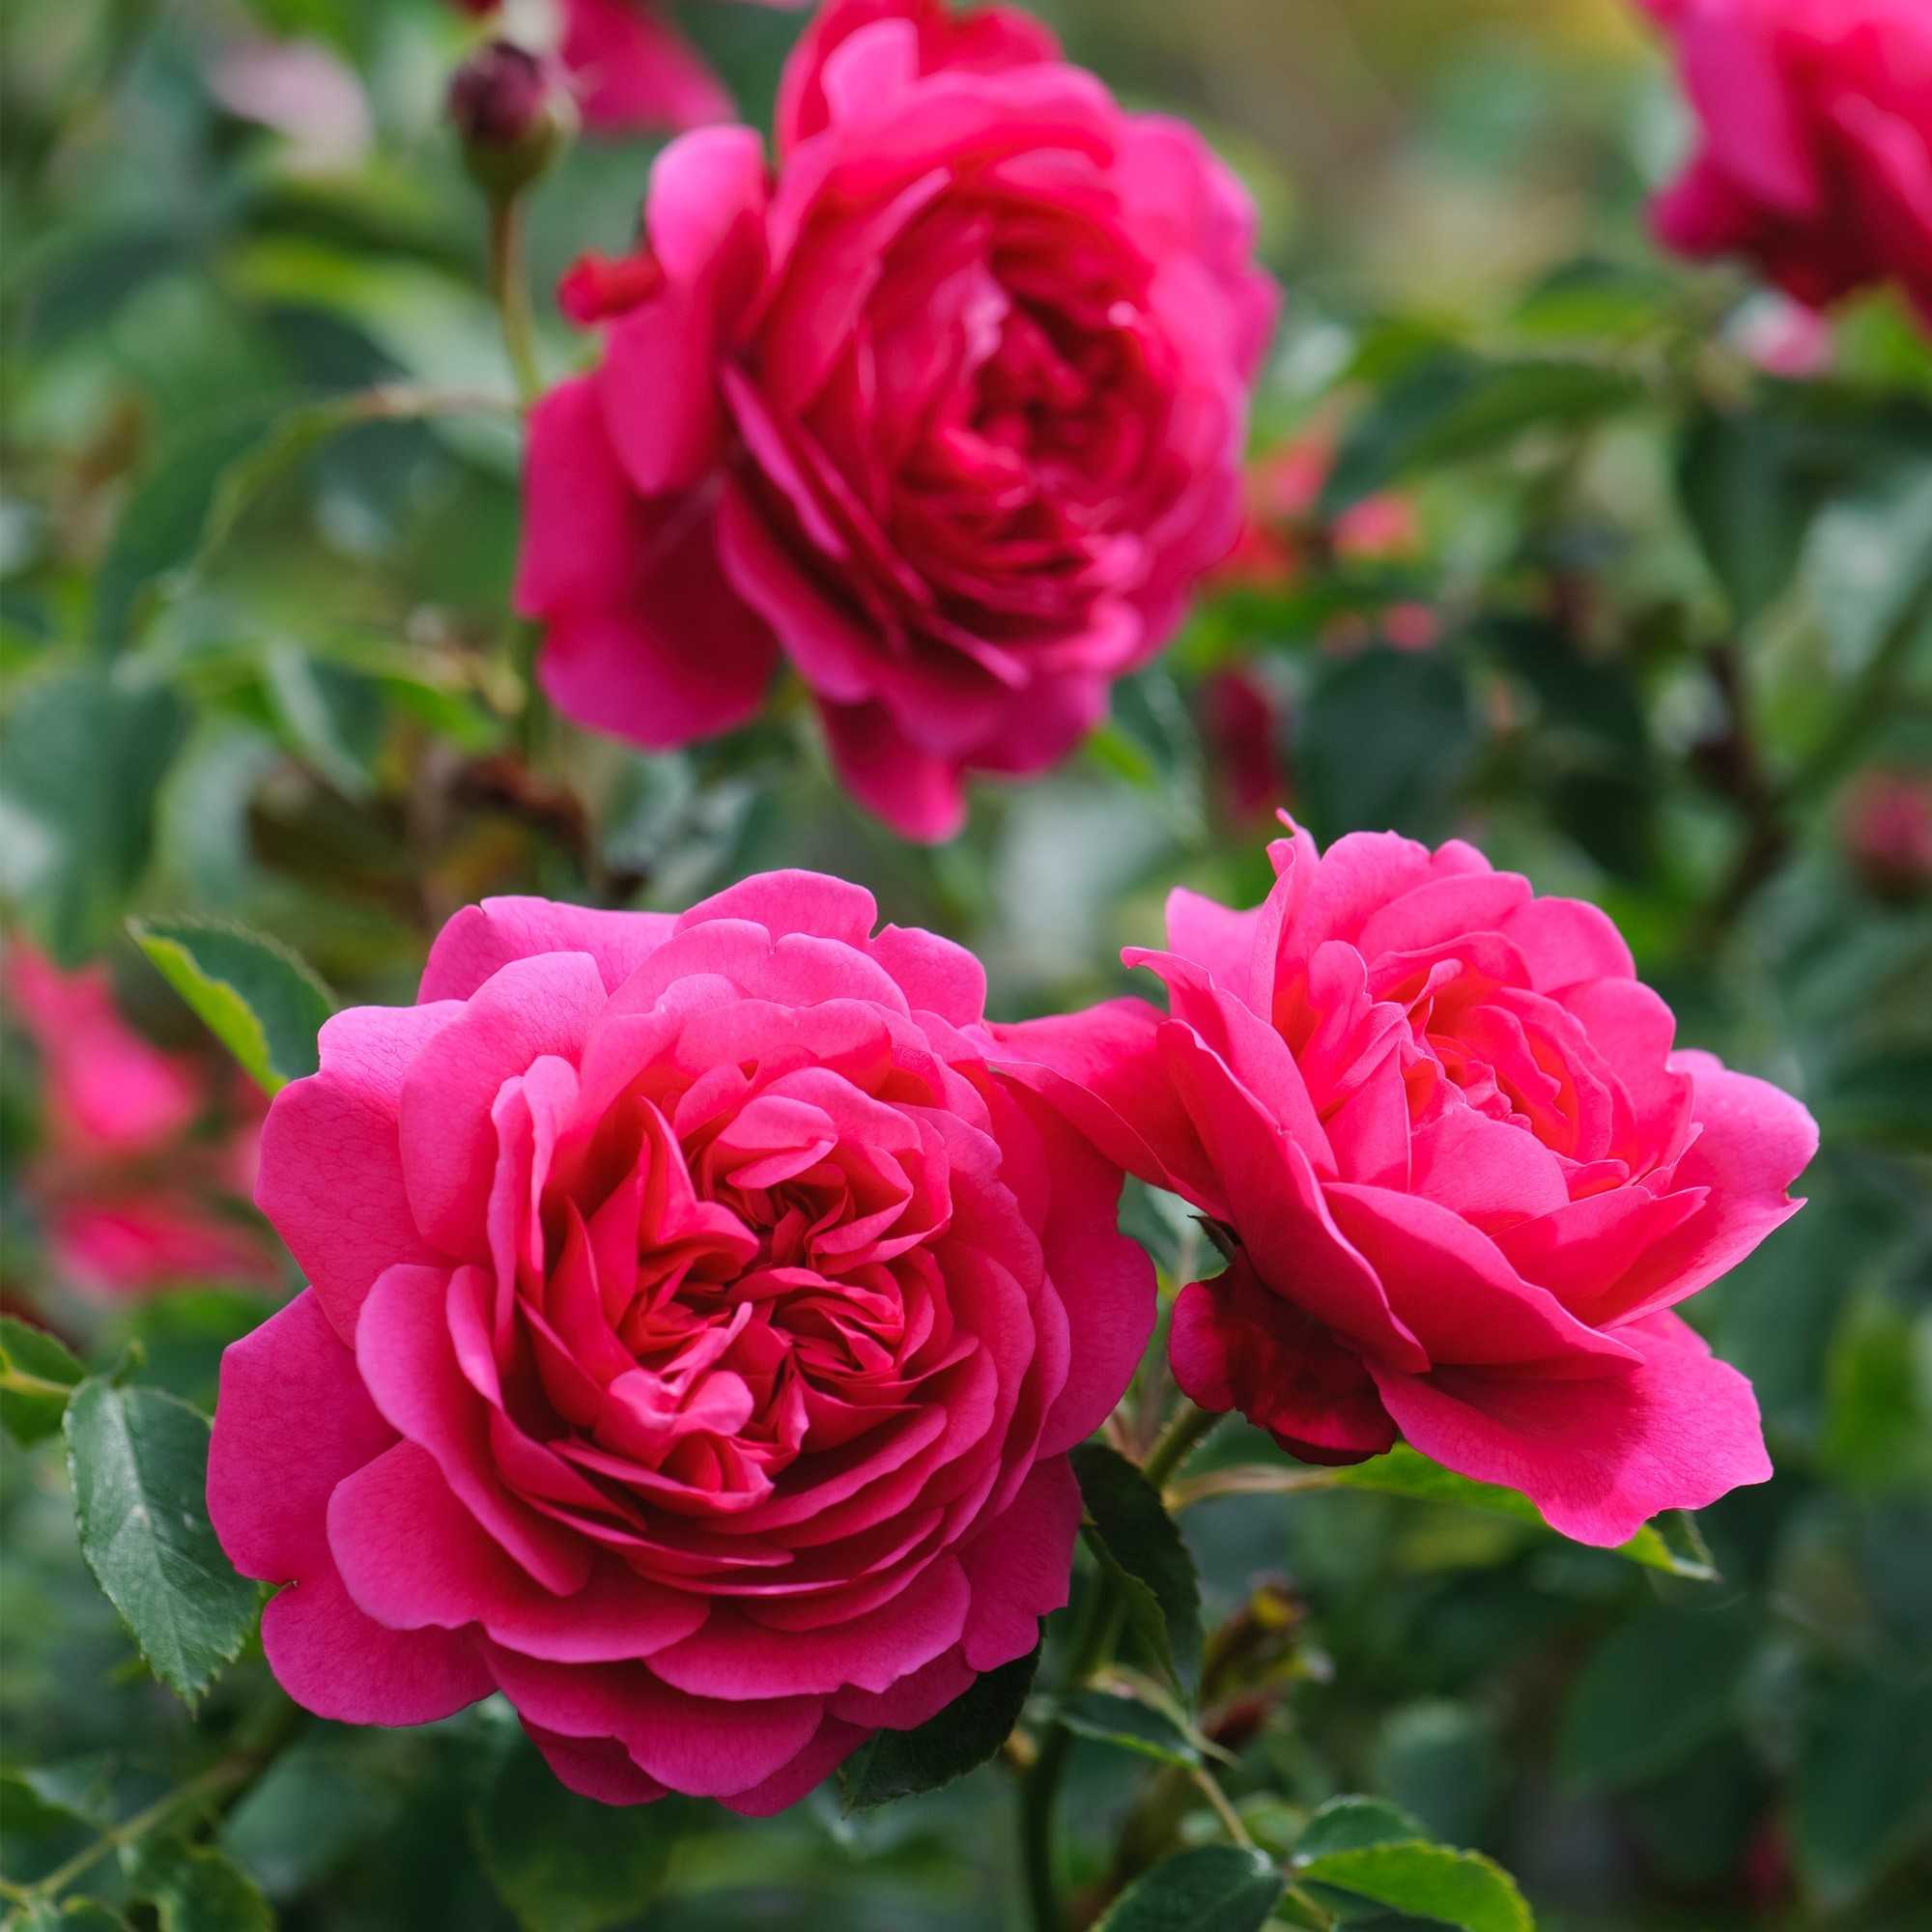 Почвопокровные розы (55 фото): что это такое? особенности ухода и выращивания, использование цветущих все лето роз в ландшафтном дизайне. как укрыть растения на зиму?